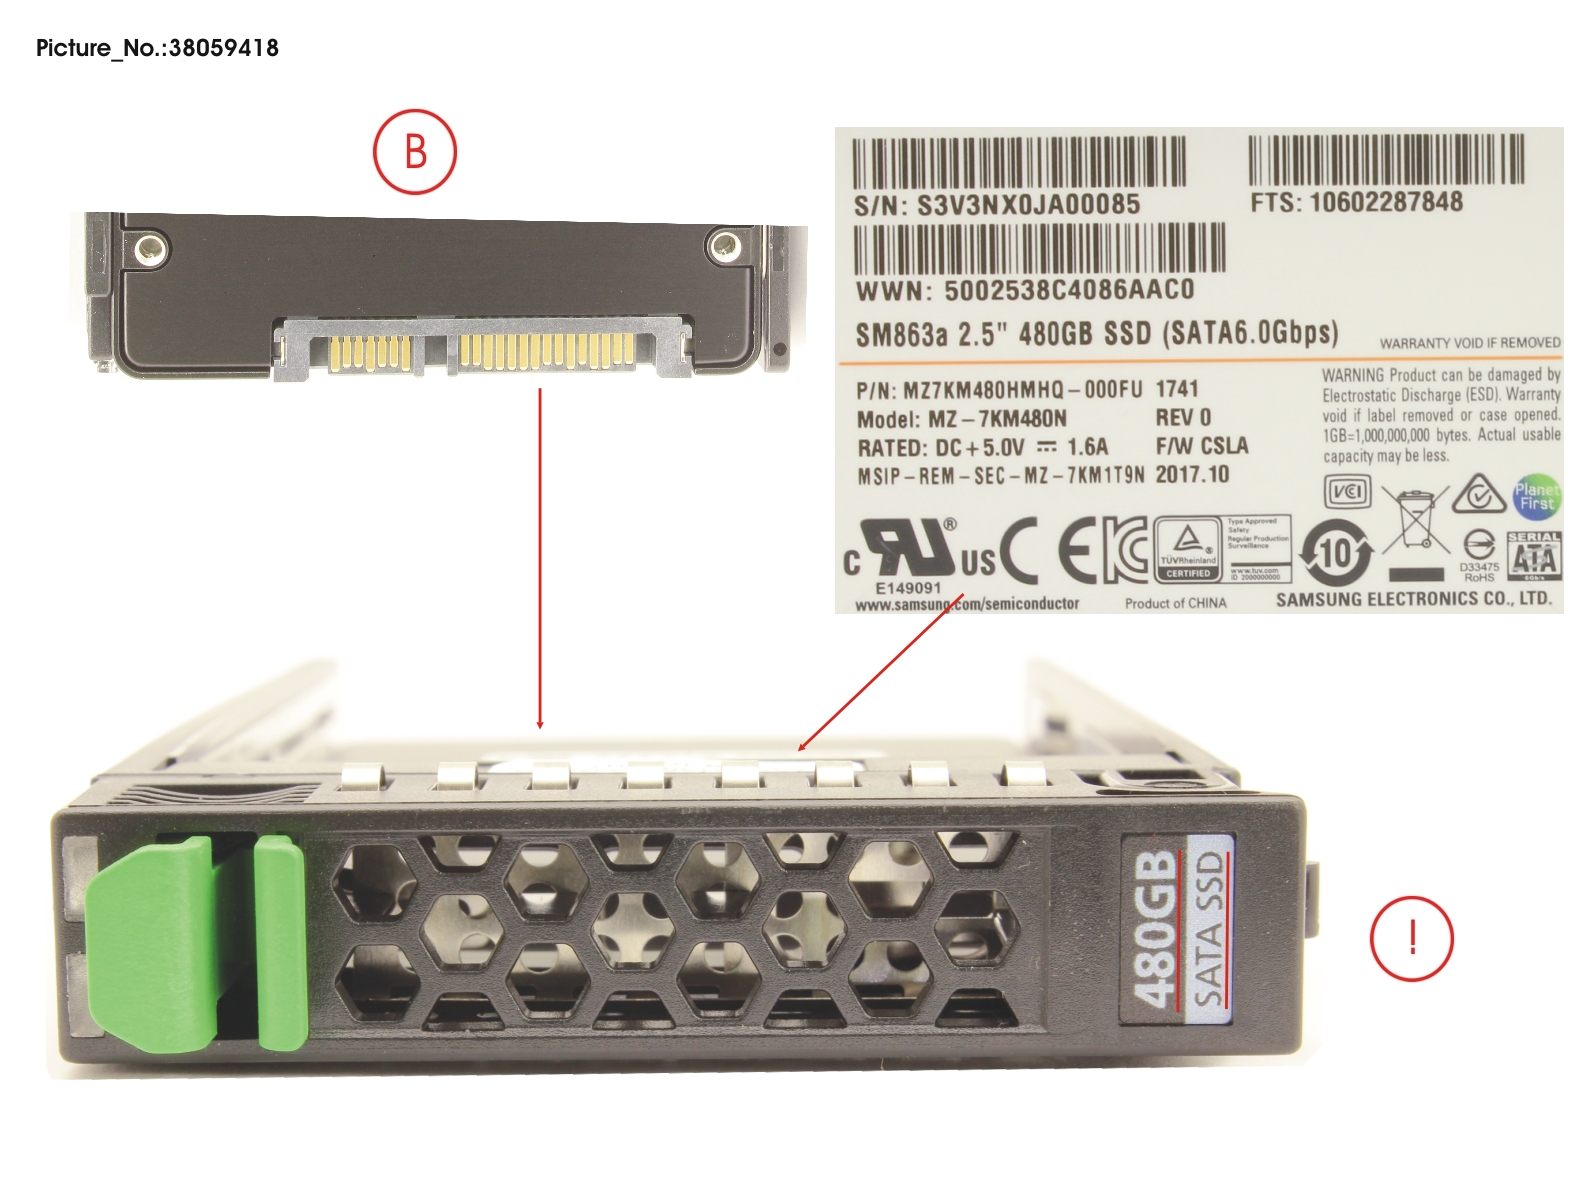 SSD SATA 6G 480GB MIXED-USE 2.5 H-P EP